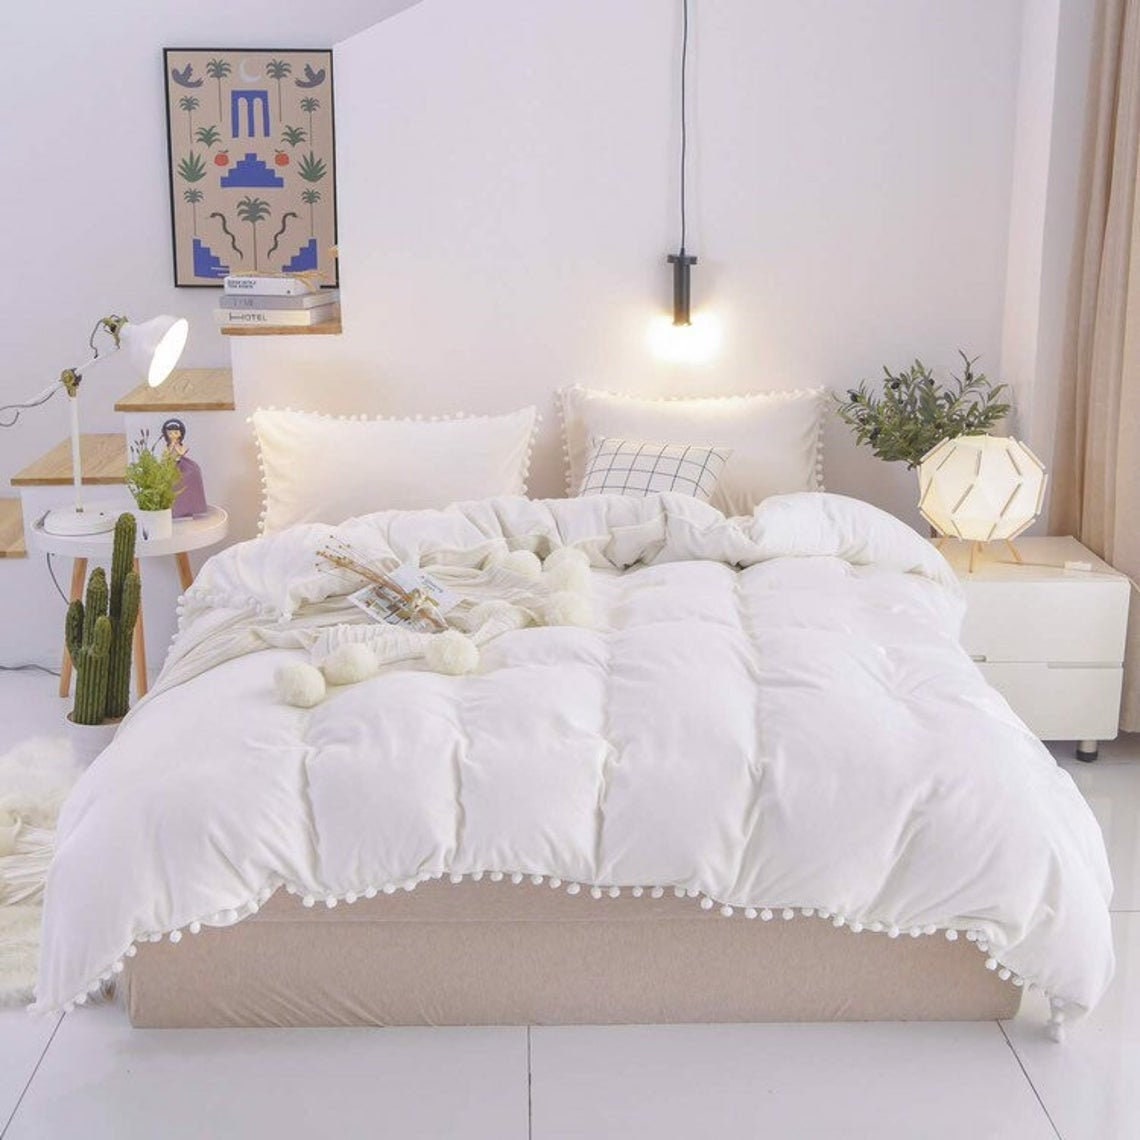 3 Piece Cotton White & Ivory Pom-pom Duvet Cover Boho Bedding | Etsy